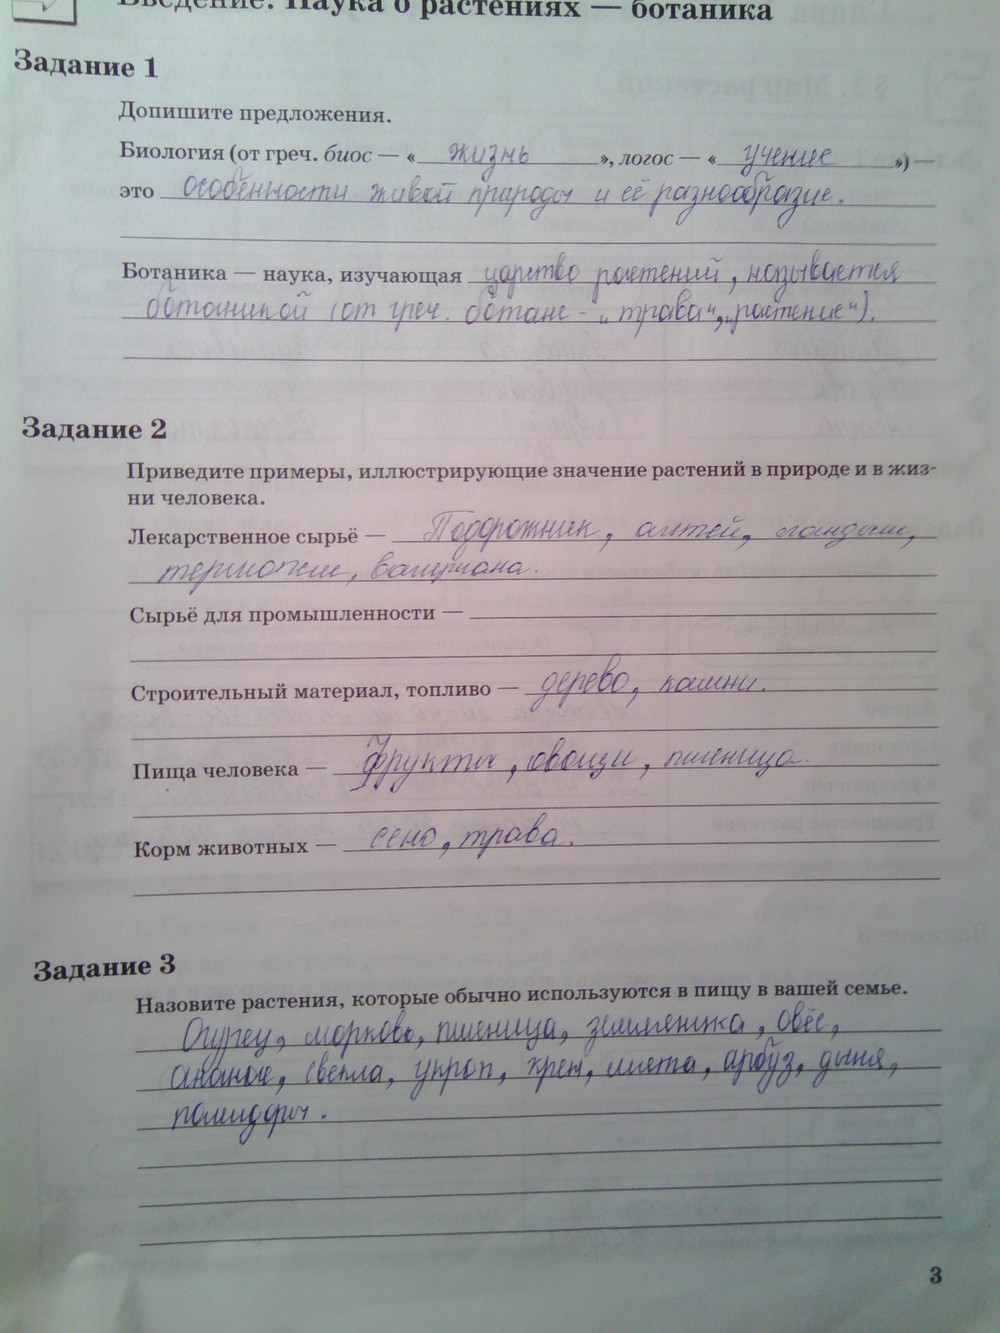 Страница (упражнение) 3 рабочей тетради. Страница 3 ГДЗ рабочая тетрадь по биологии 6 класс Пономарева